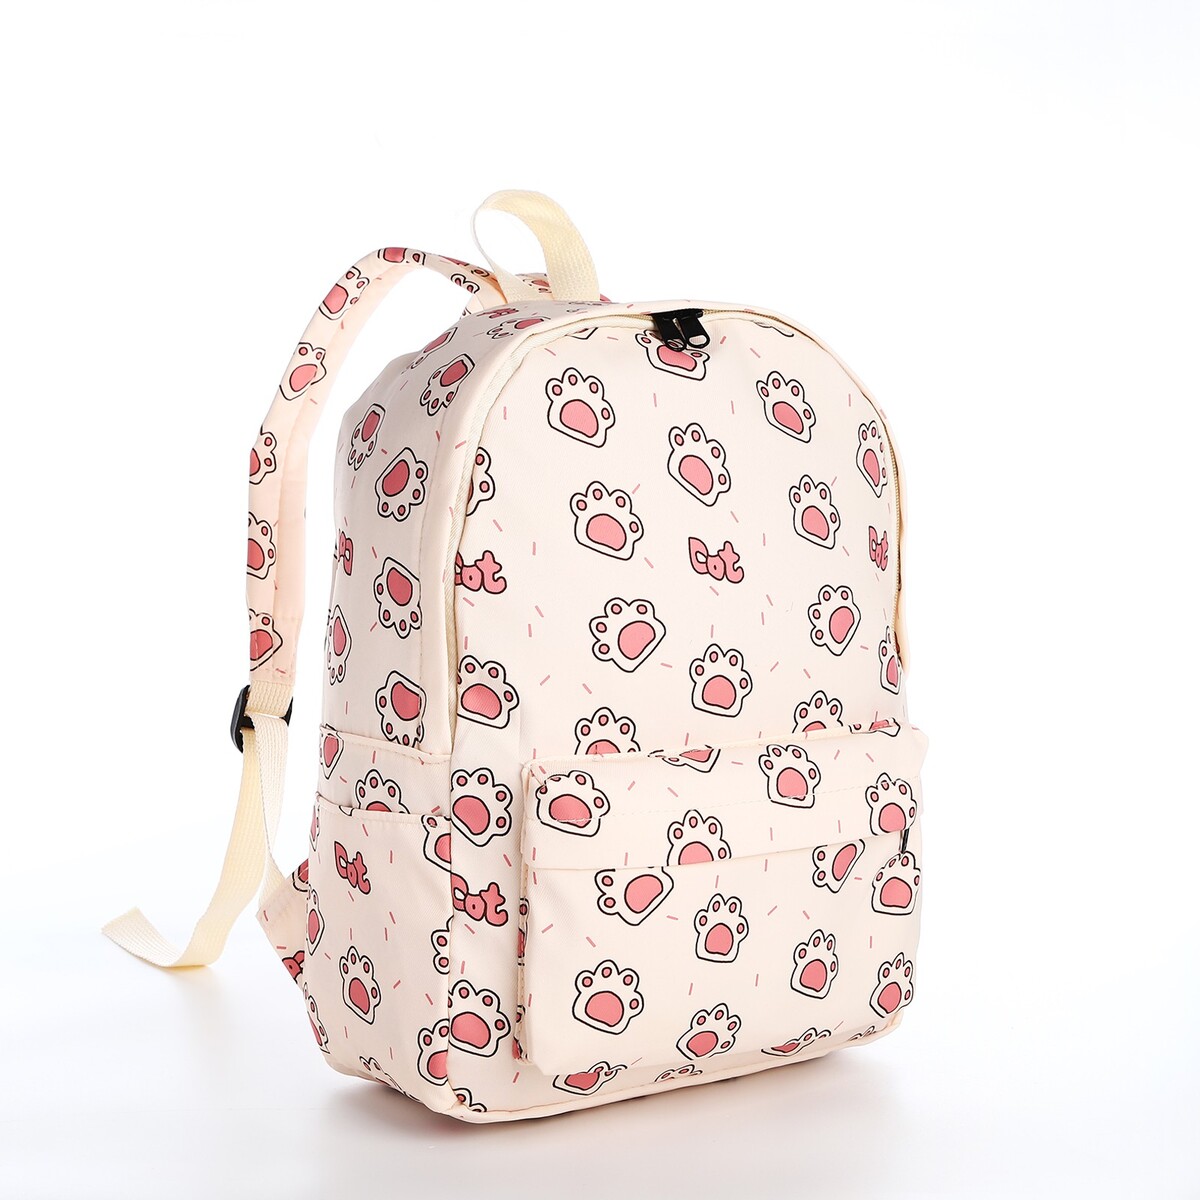 Рюкзак школьный из текстиля на молнии, 3 кармана, цвет бежевый/розовый рюкзак детский на молнии 3 наружных кармана бежевый